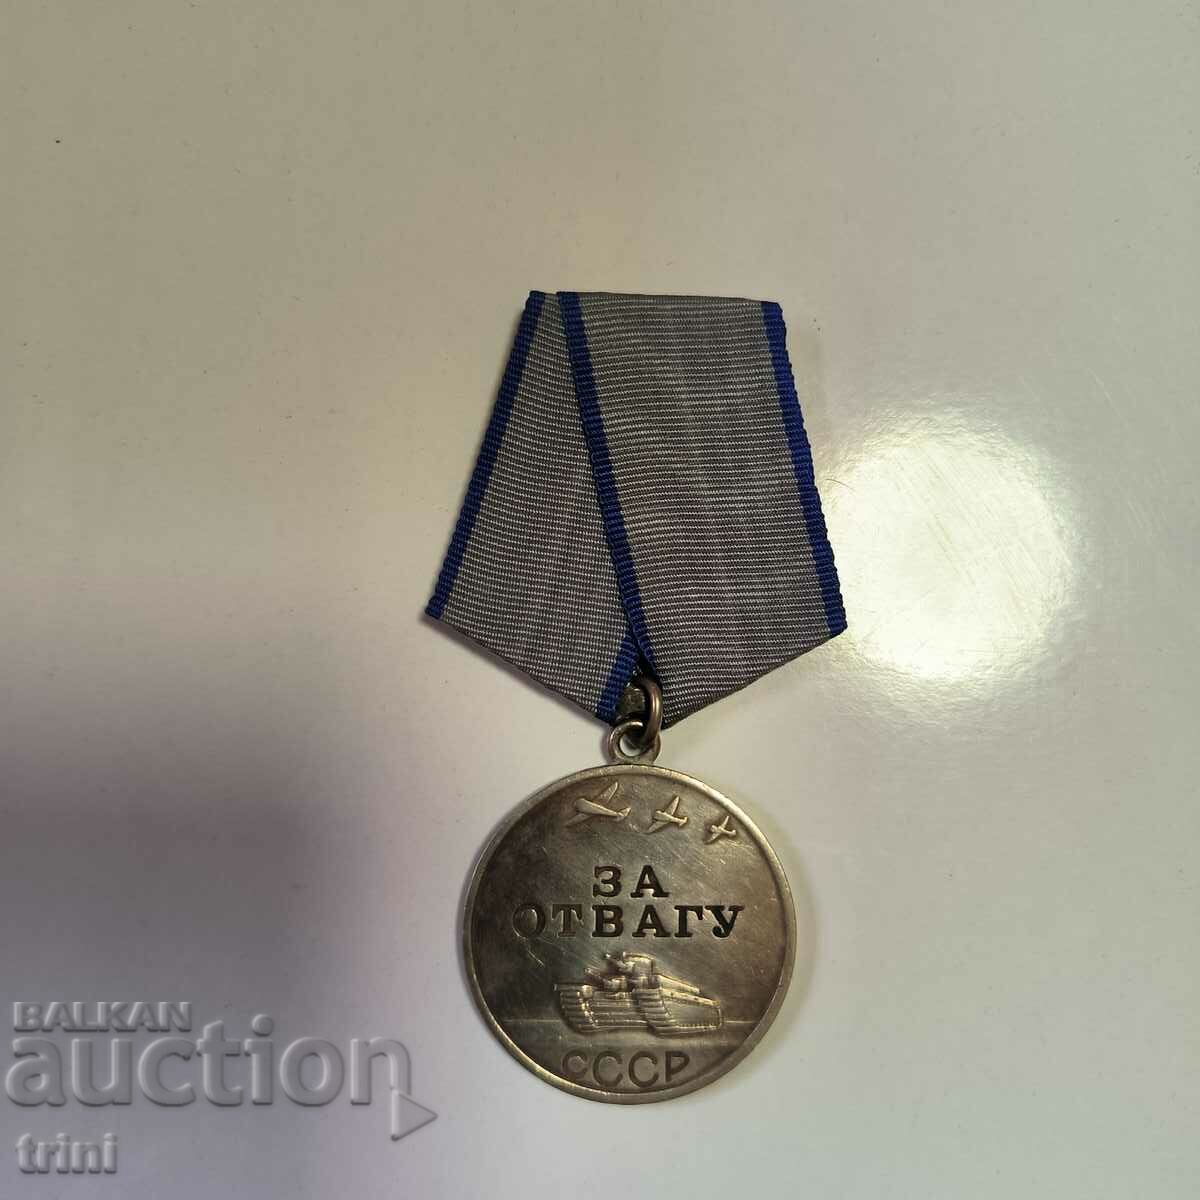 Medalia Pentru Curaj / For Courage SCC numarul 1978152